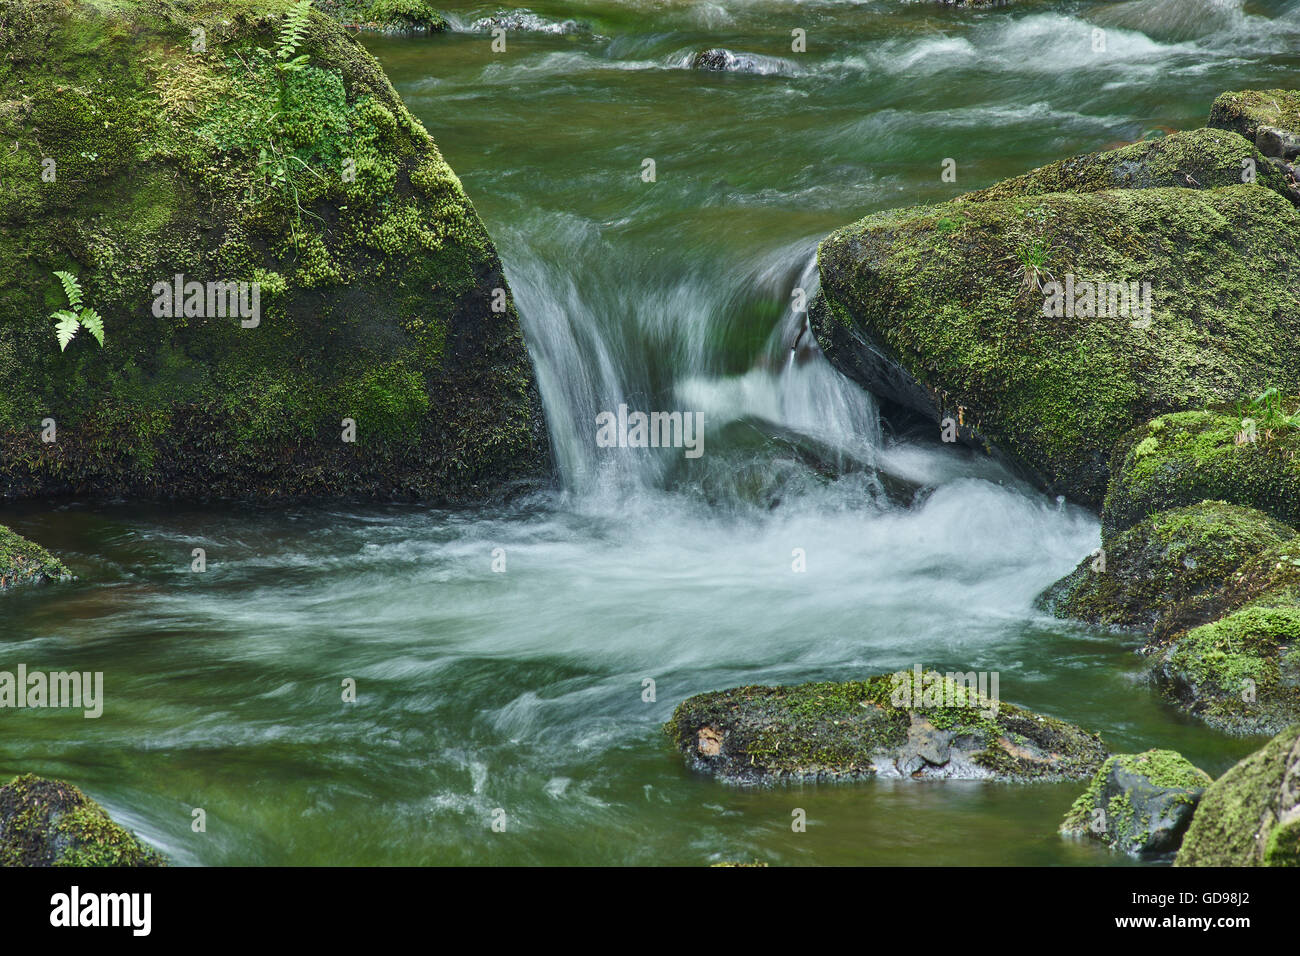 Bergwasser Fluss fließt durch Grün bemoosten Steinen Felsbrocken Stockfoto